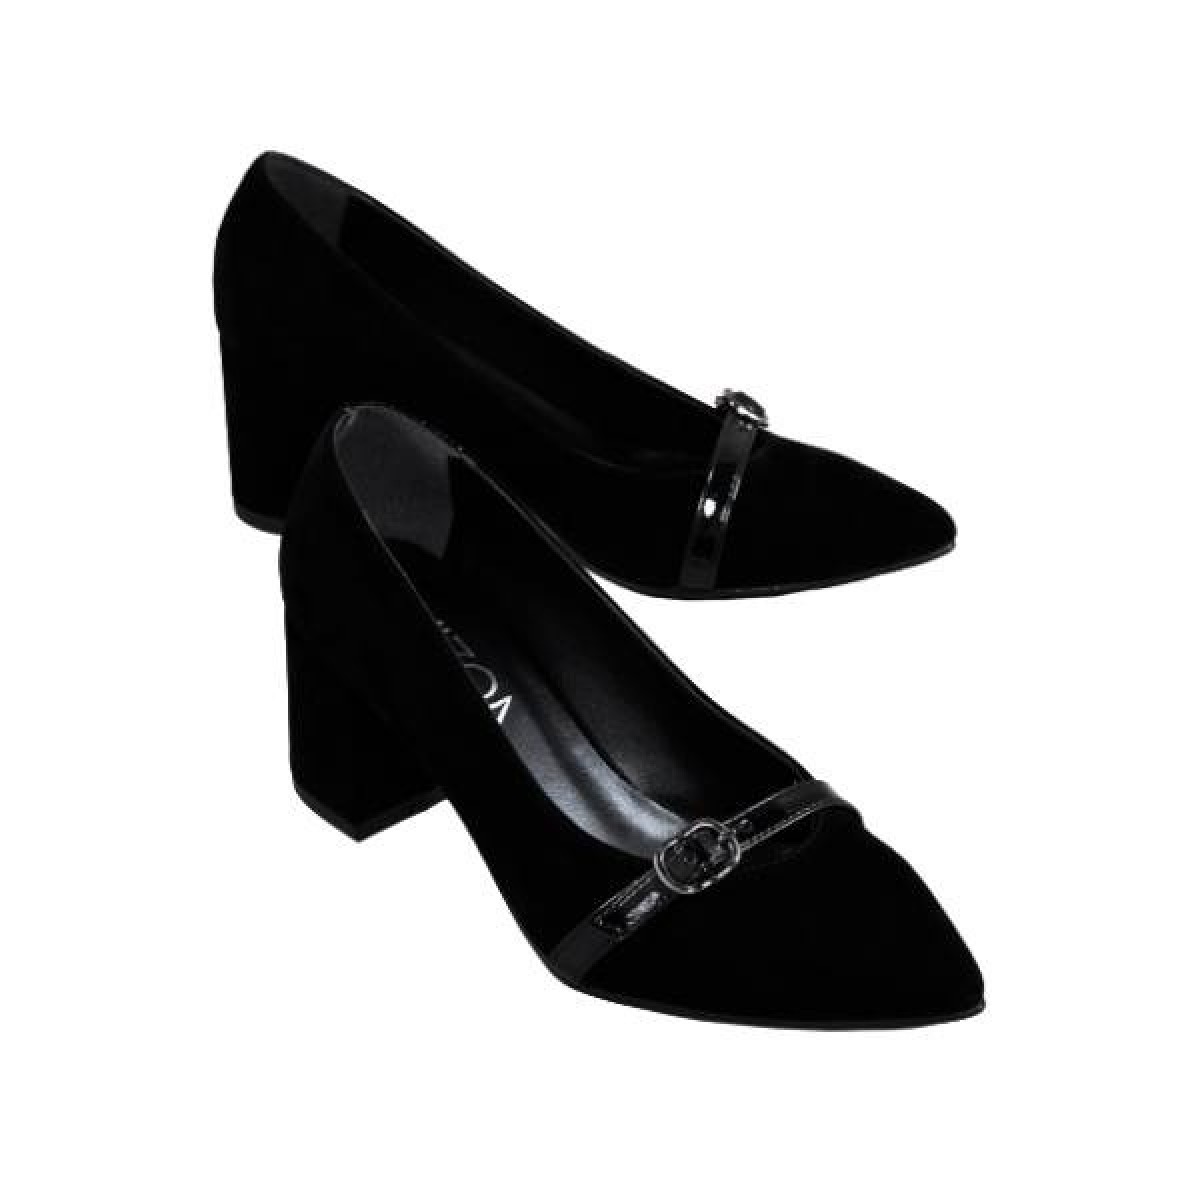 Flo Kadın  Siyah-Süet Klasik Topuklu Ayakkabı VZN19-110K. 3